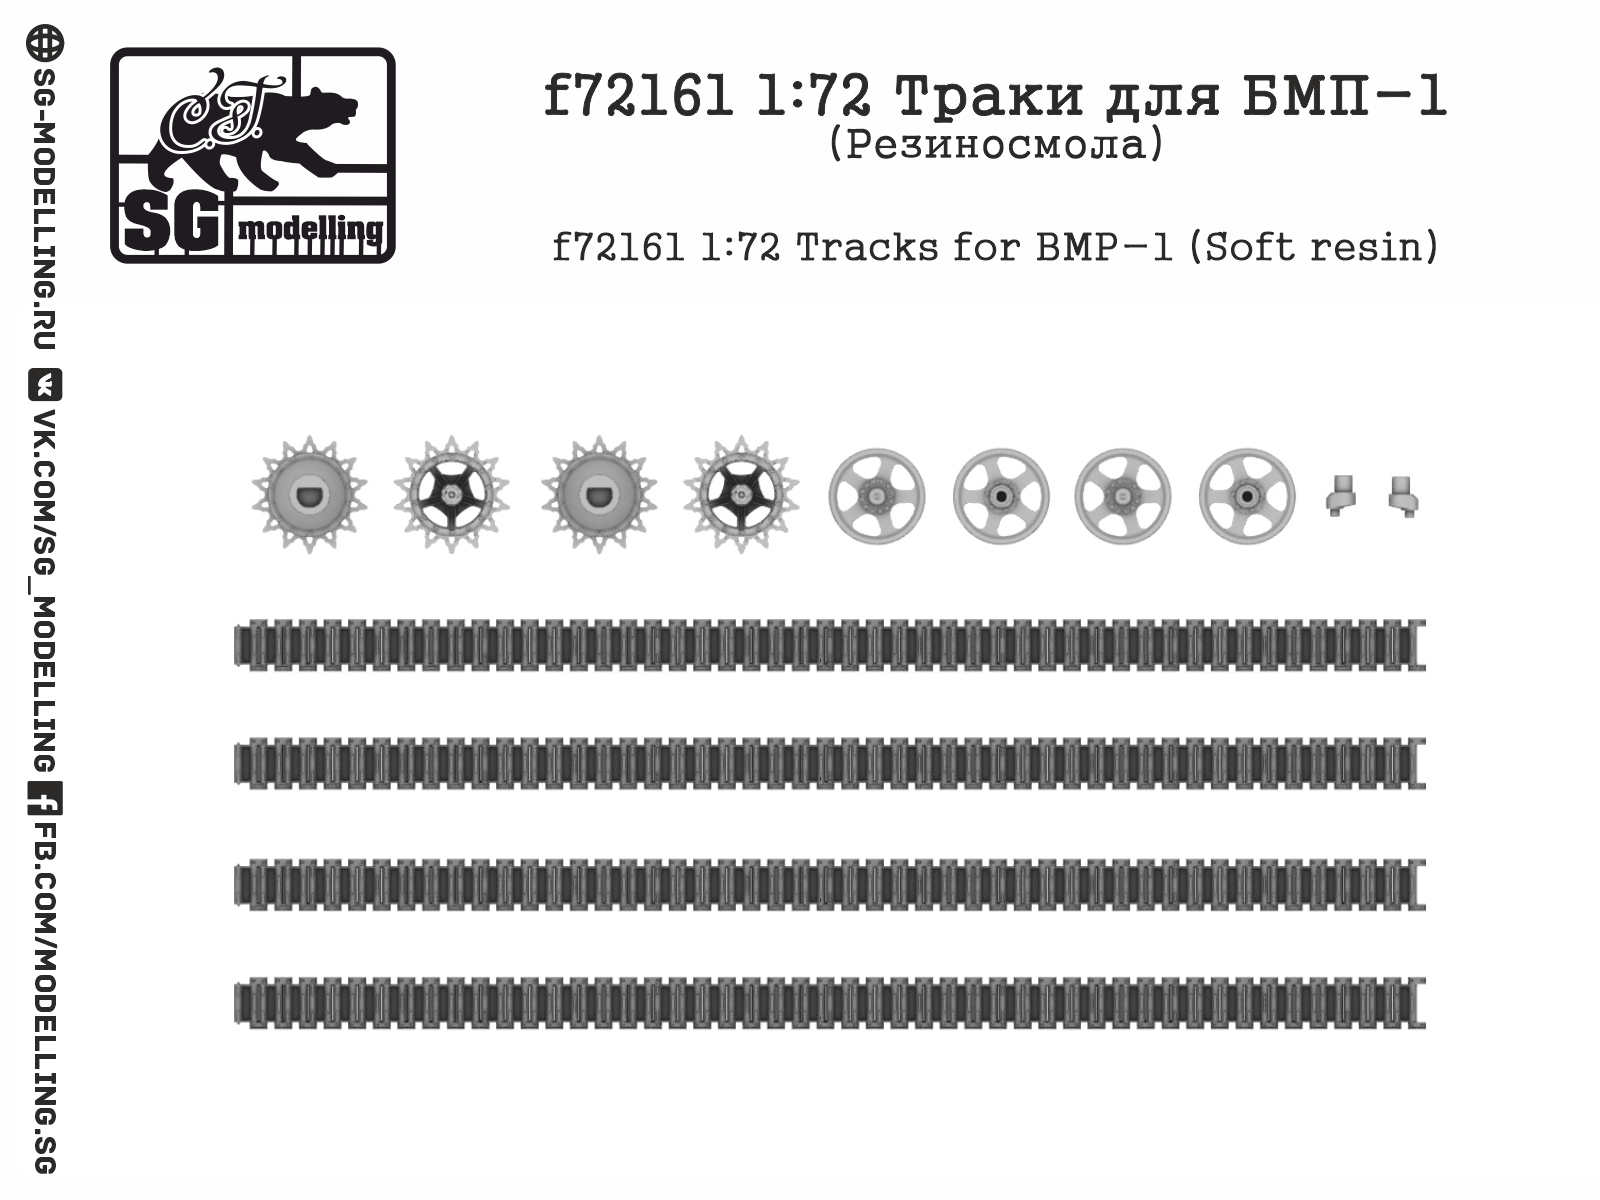 f72161  дополнения из смолы  Траки для БМП-1  (1:72)